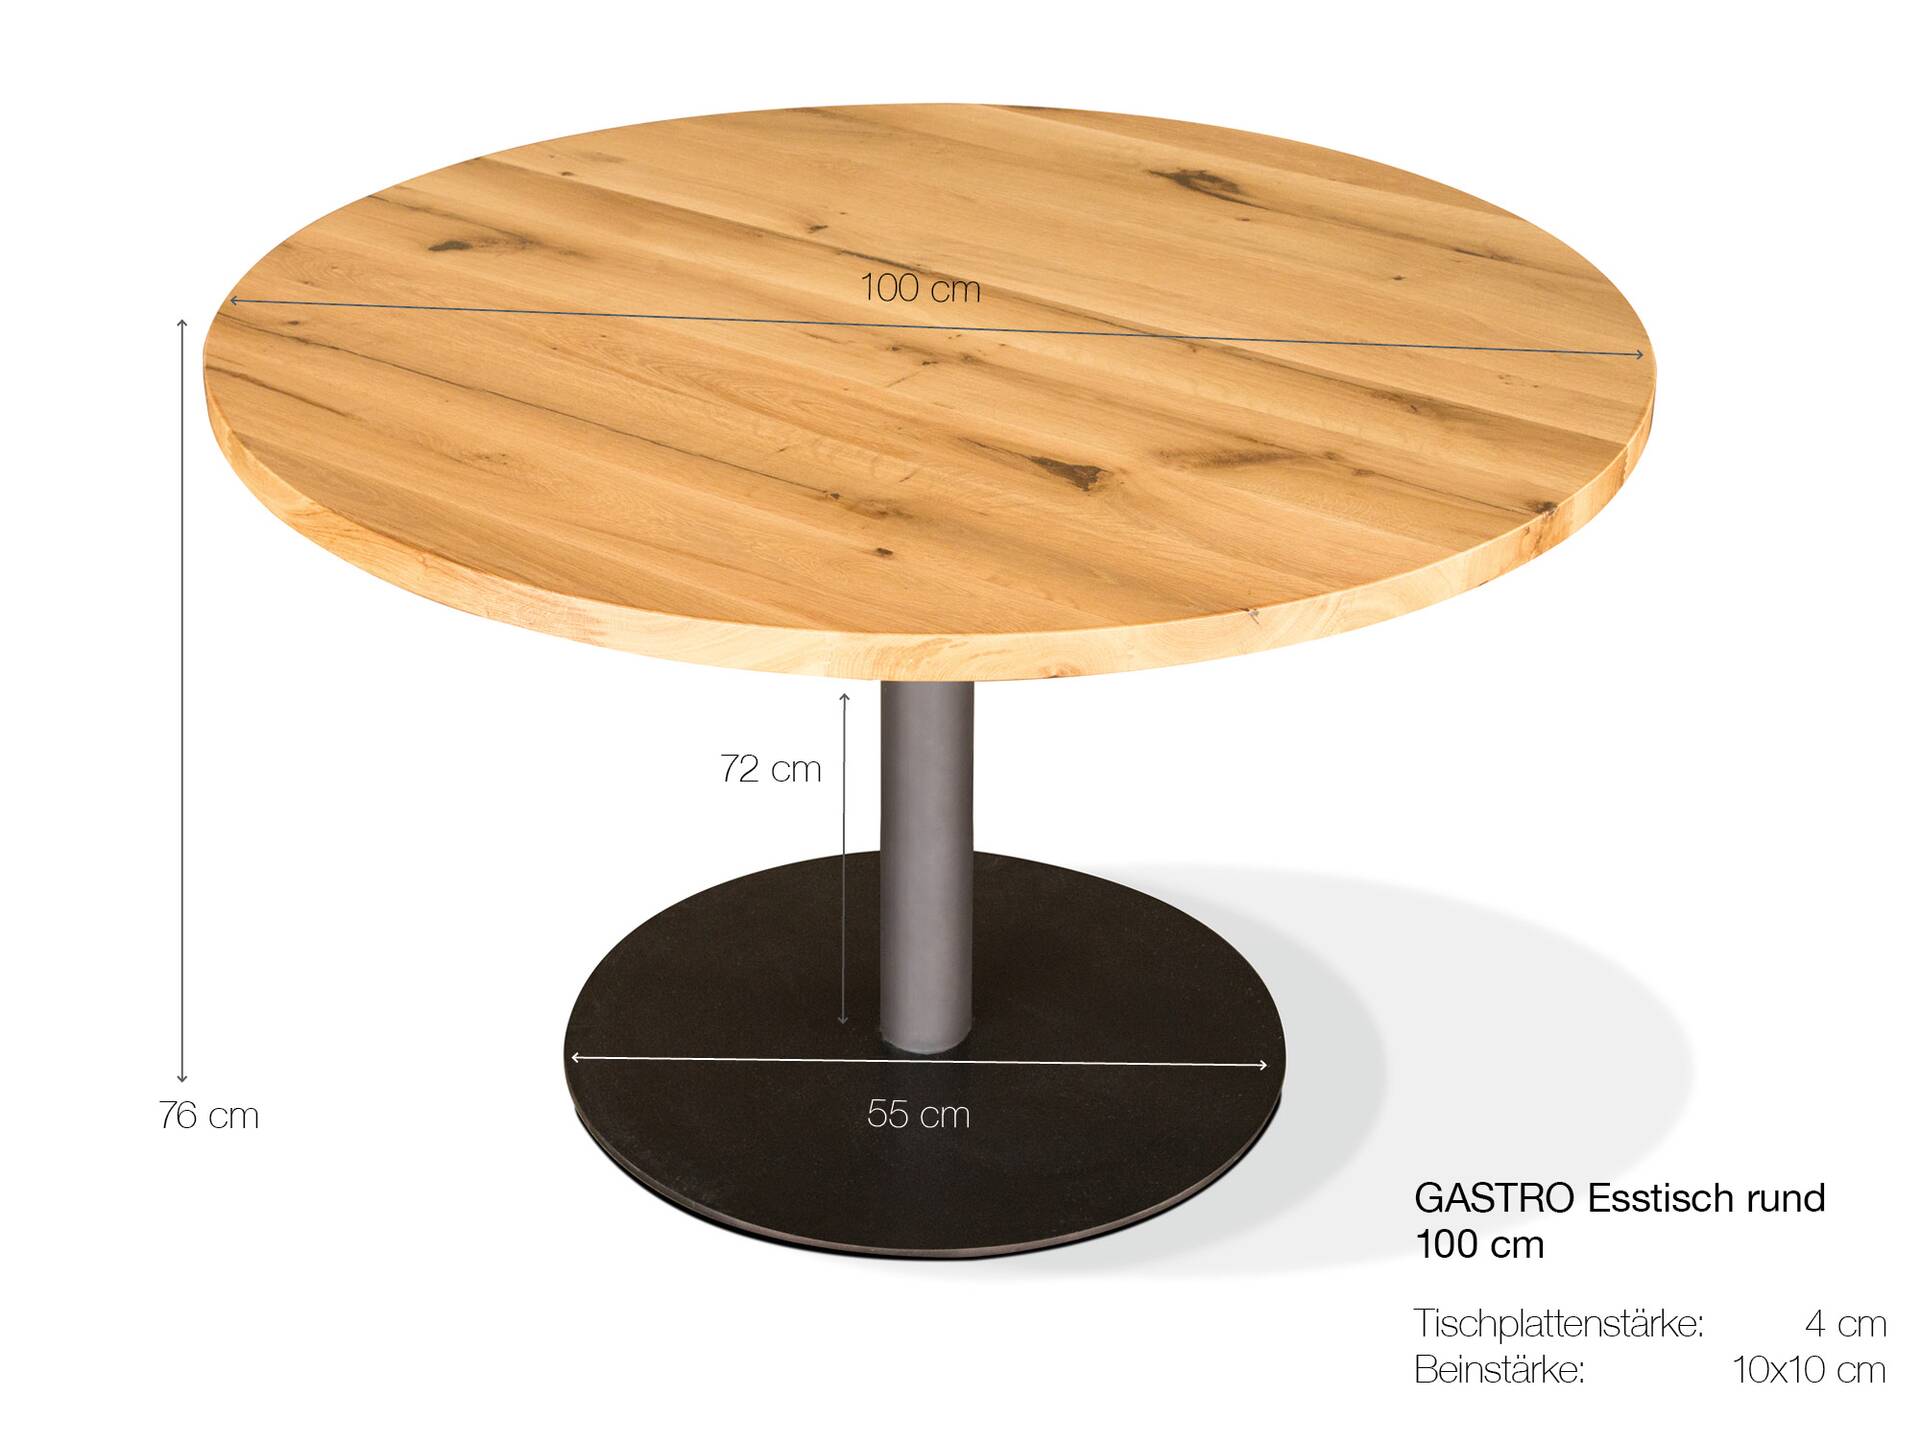 GASTRO Esstisch rund, Material Massivholz/Metall, Eiche lackiert 100 cm